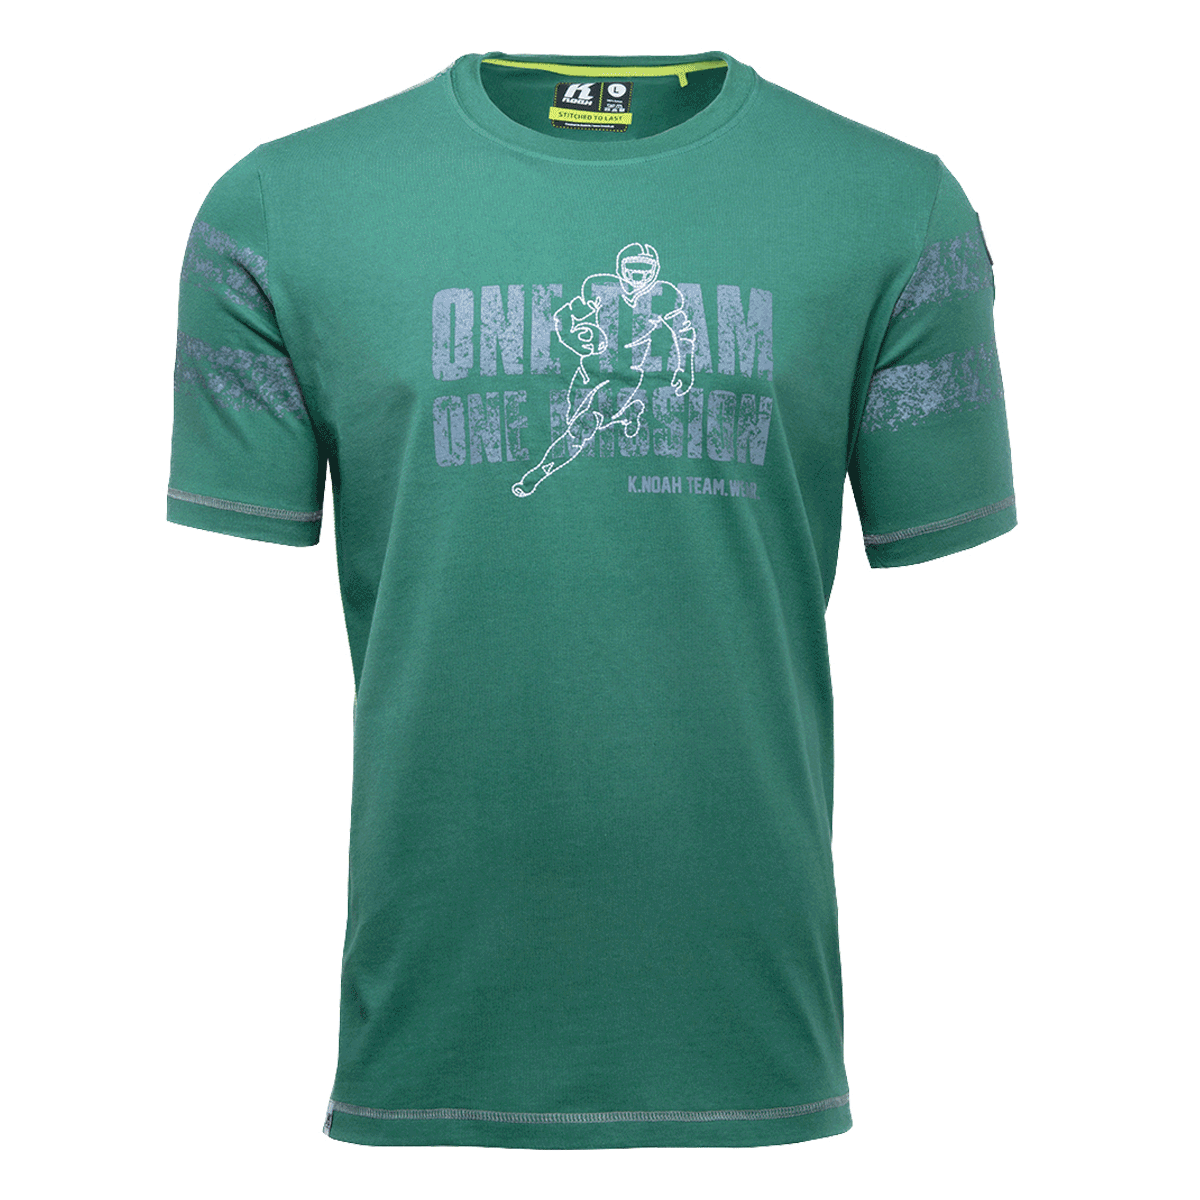 T-Shirt_OneTeam-OneMission_darkgreen